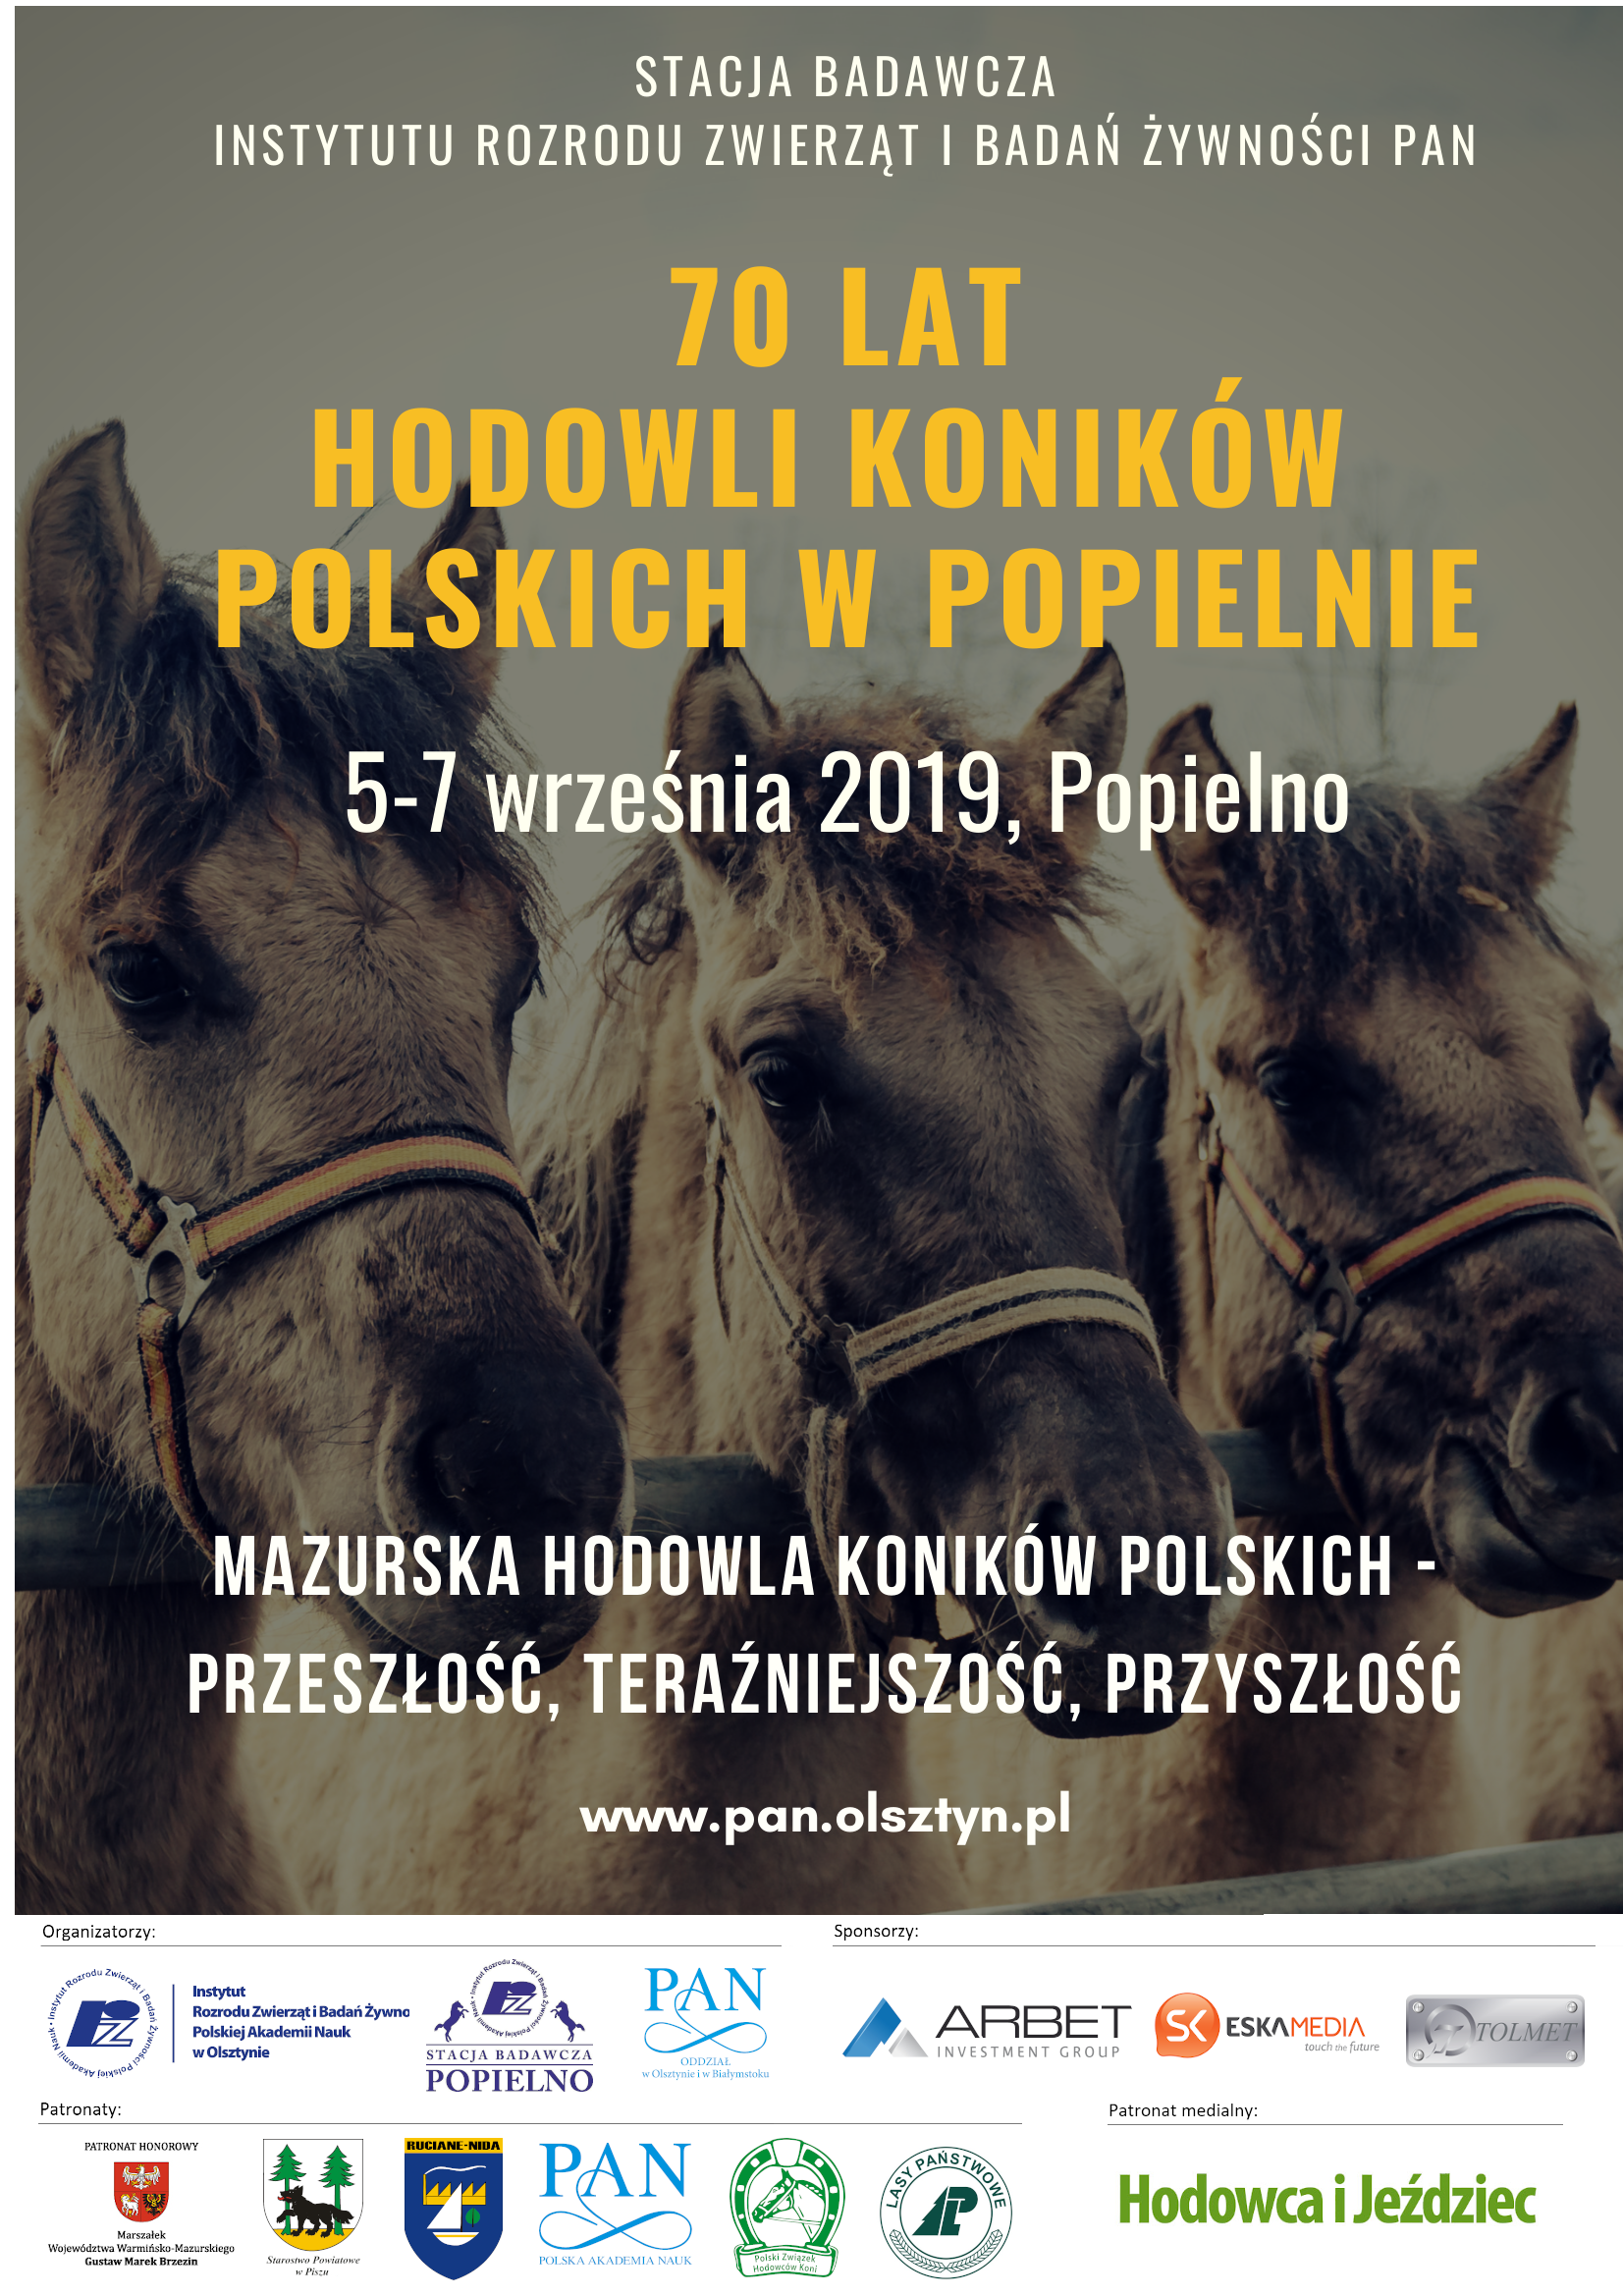 Plakat z hasłem "70 lat hodowli koników polskich w Popielnie"; na zdjęciu 3 koniki